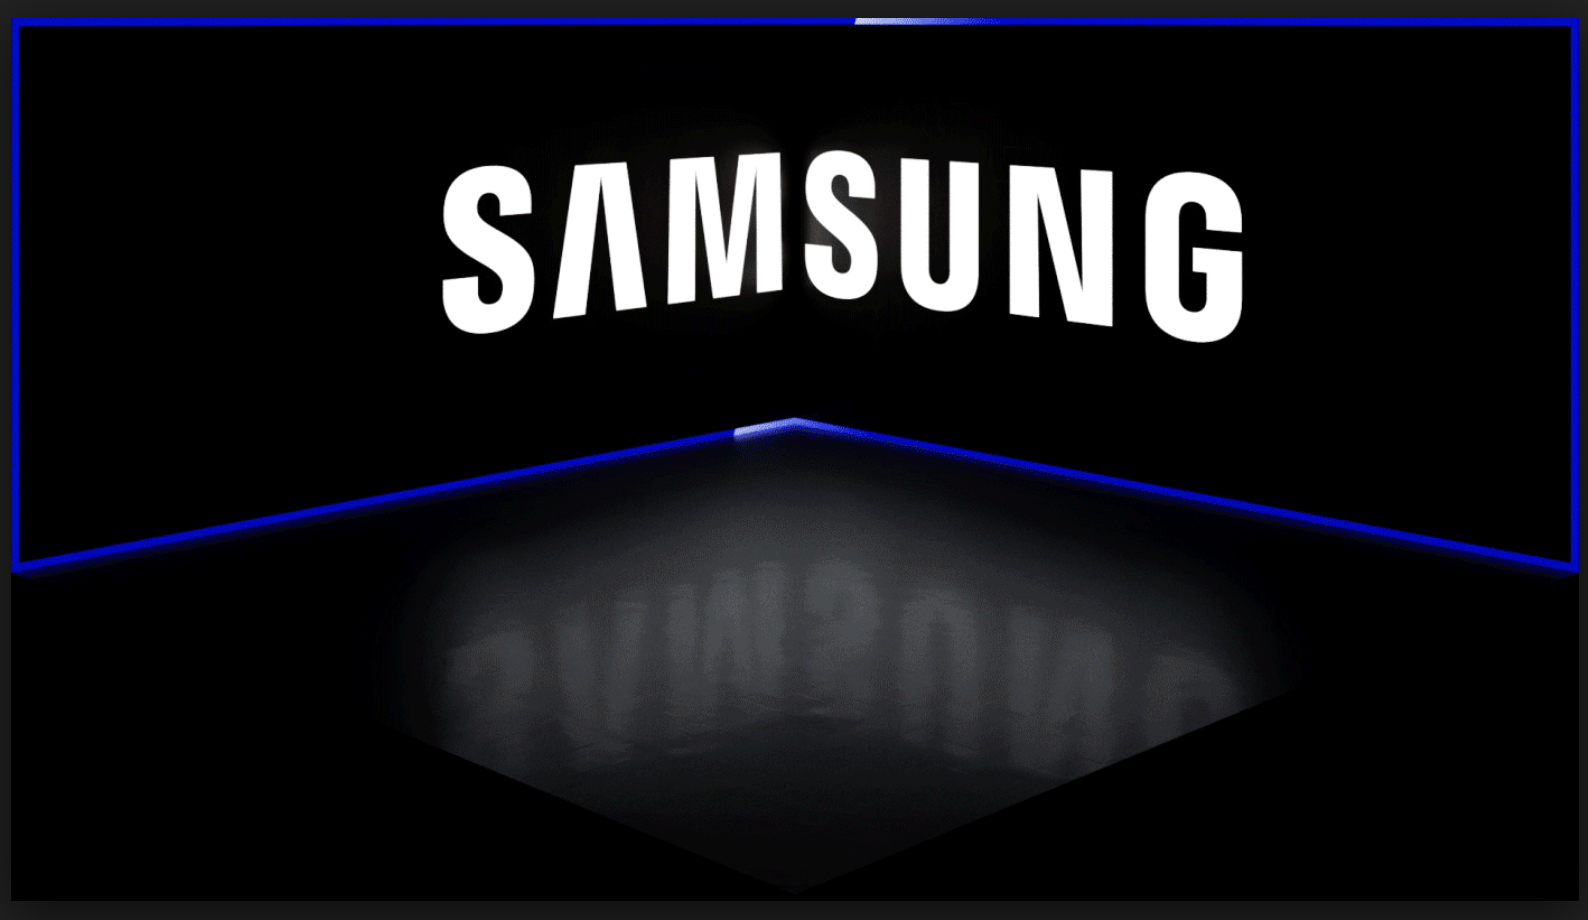 Samsung представит три мобильных телефона Galaxy А с считывателем отпечатков пальцев на экране